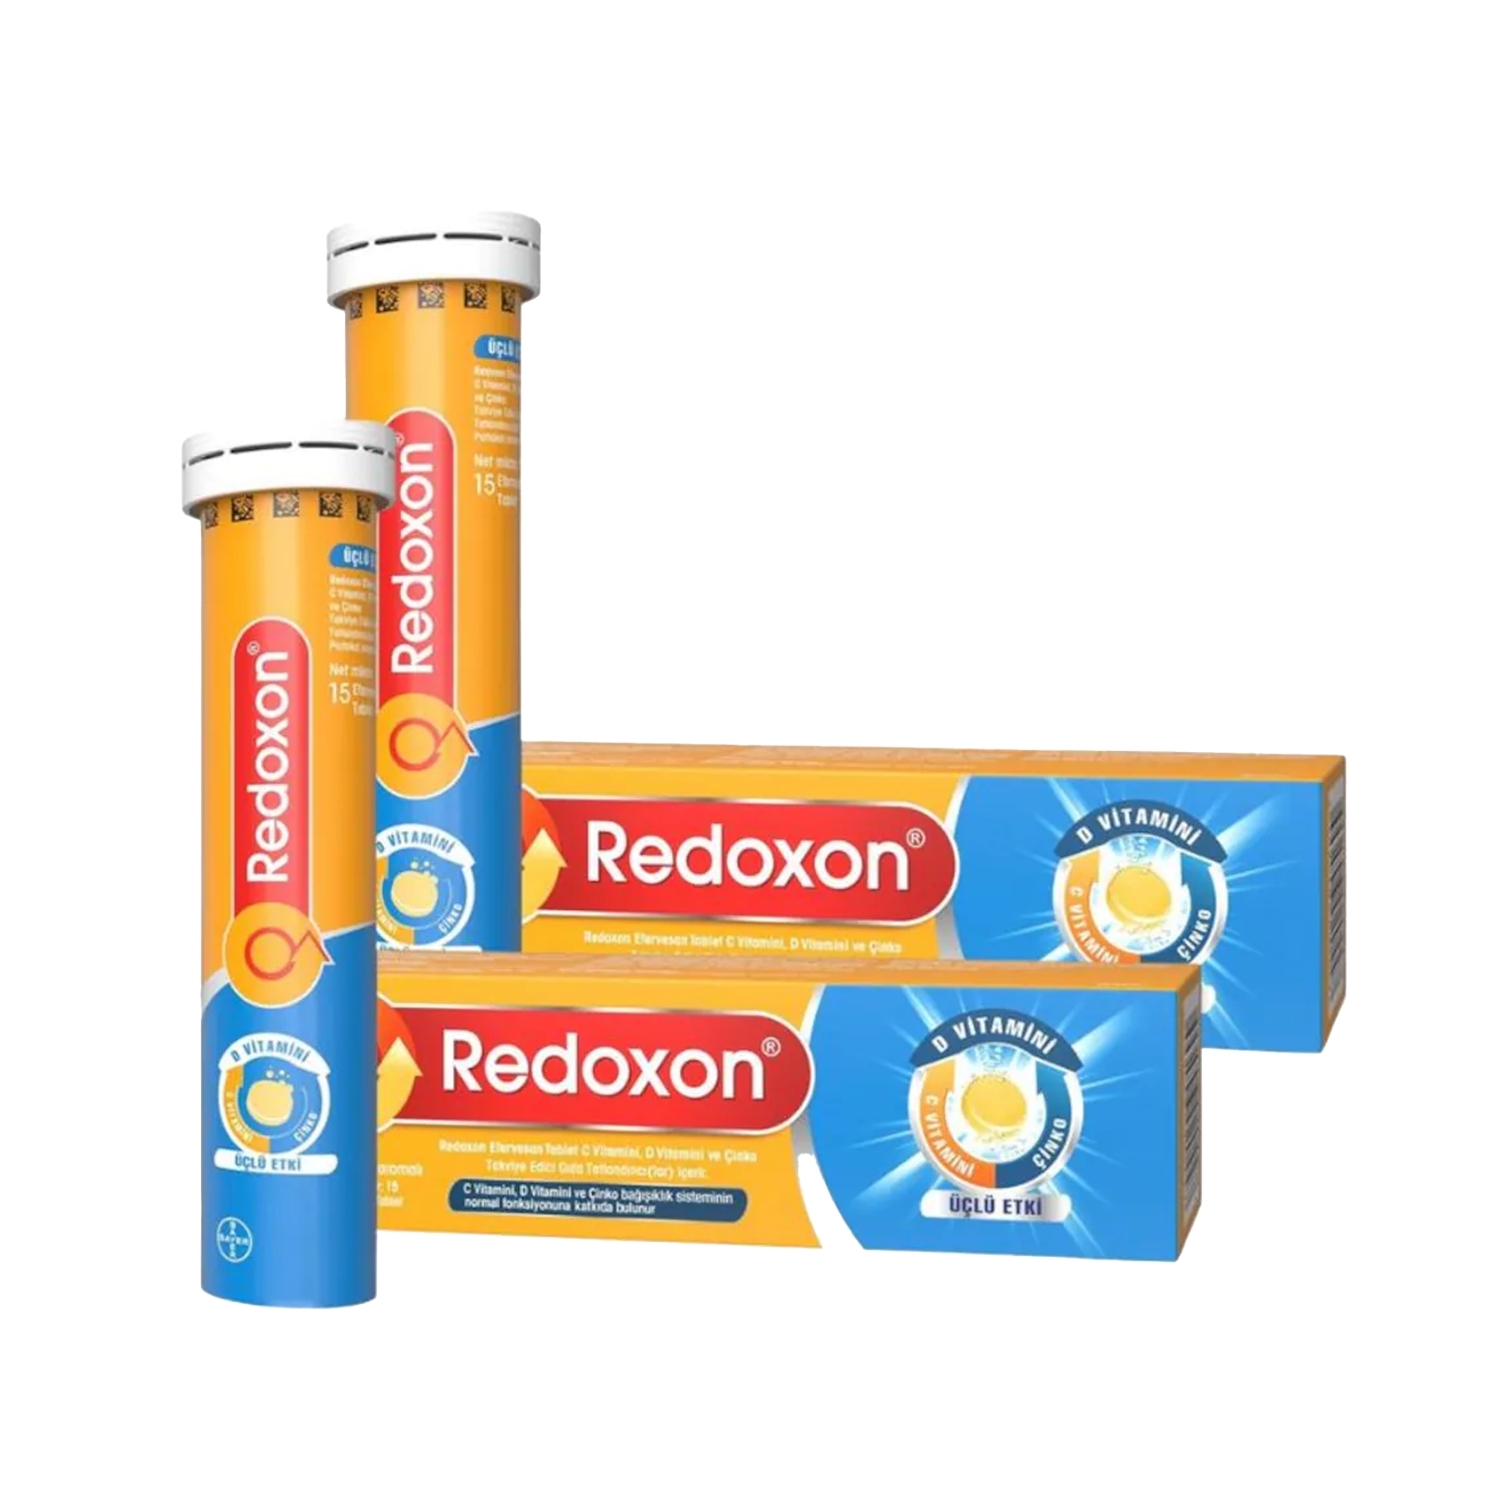 Redoxon Üçlü Etki Takviye Edici Gıda 2x15 Efervesan Tablet